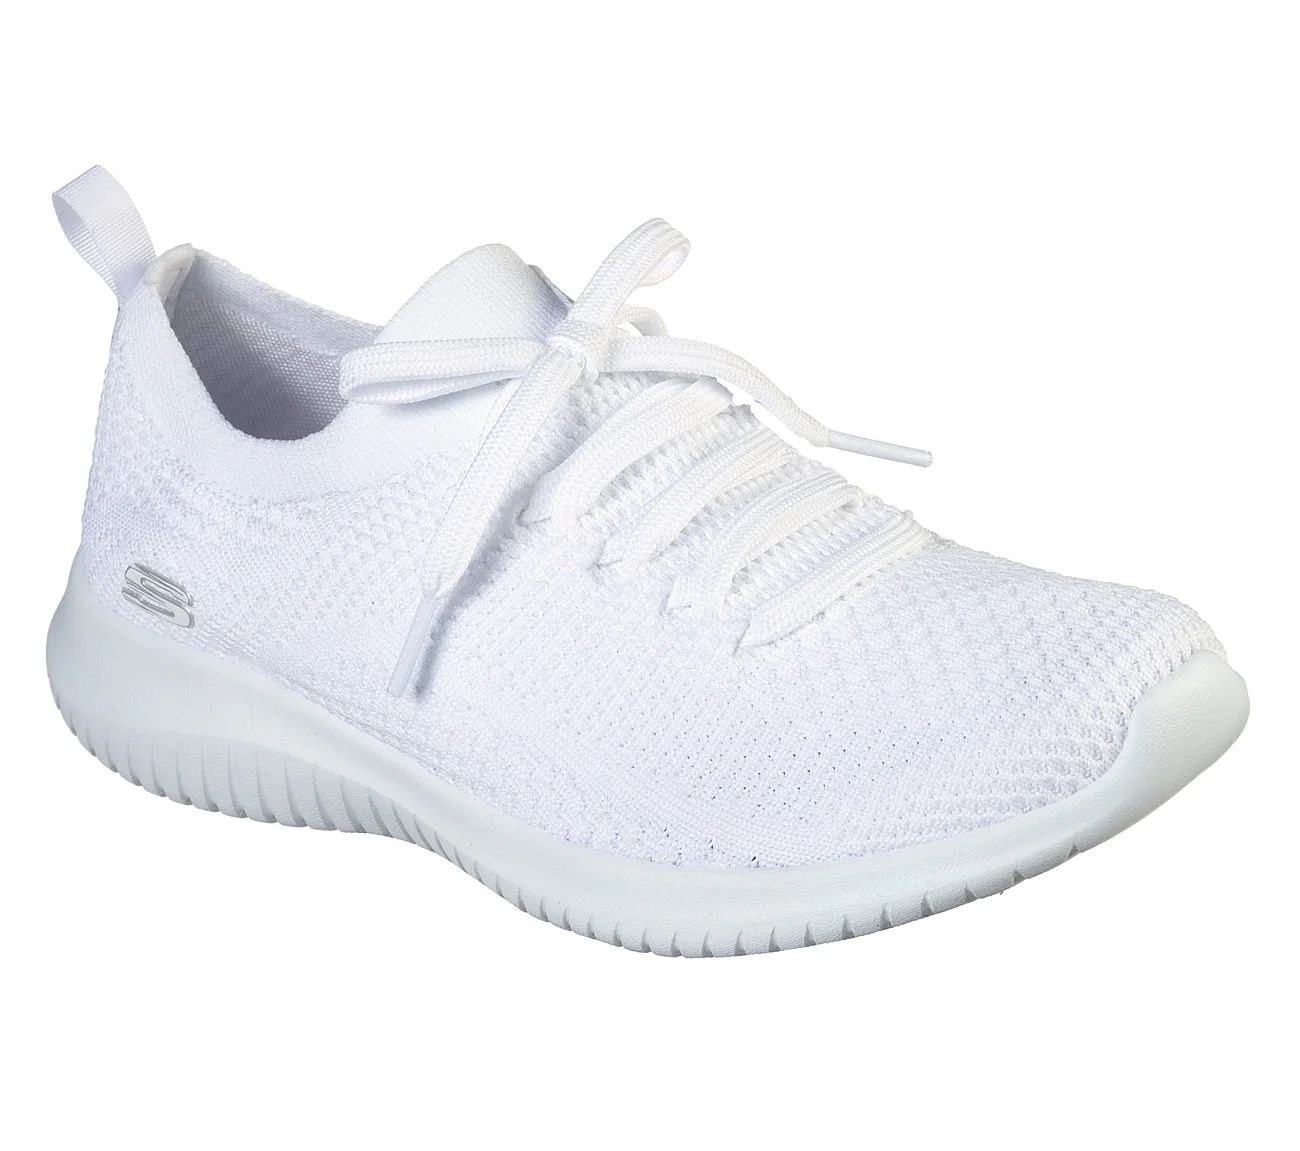 Skechers Women's Ultra Flex - Statements Sneaker, White/Silver, 7 M US | Walmart (US)